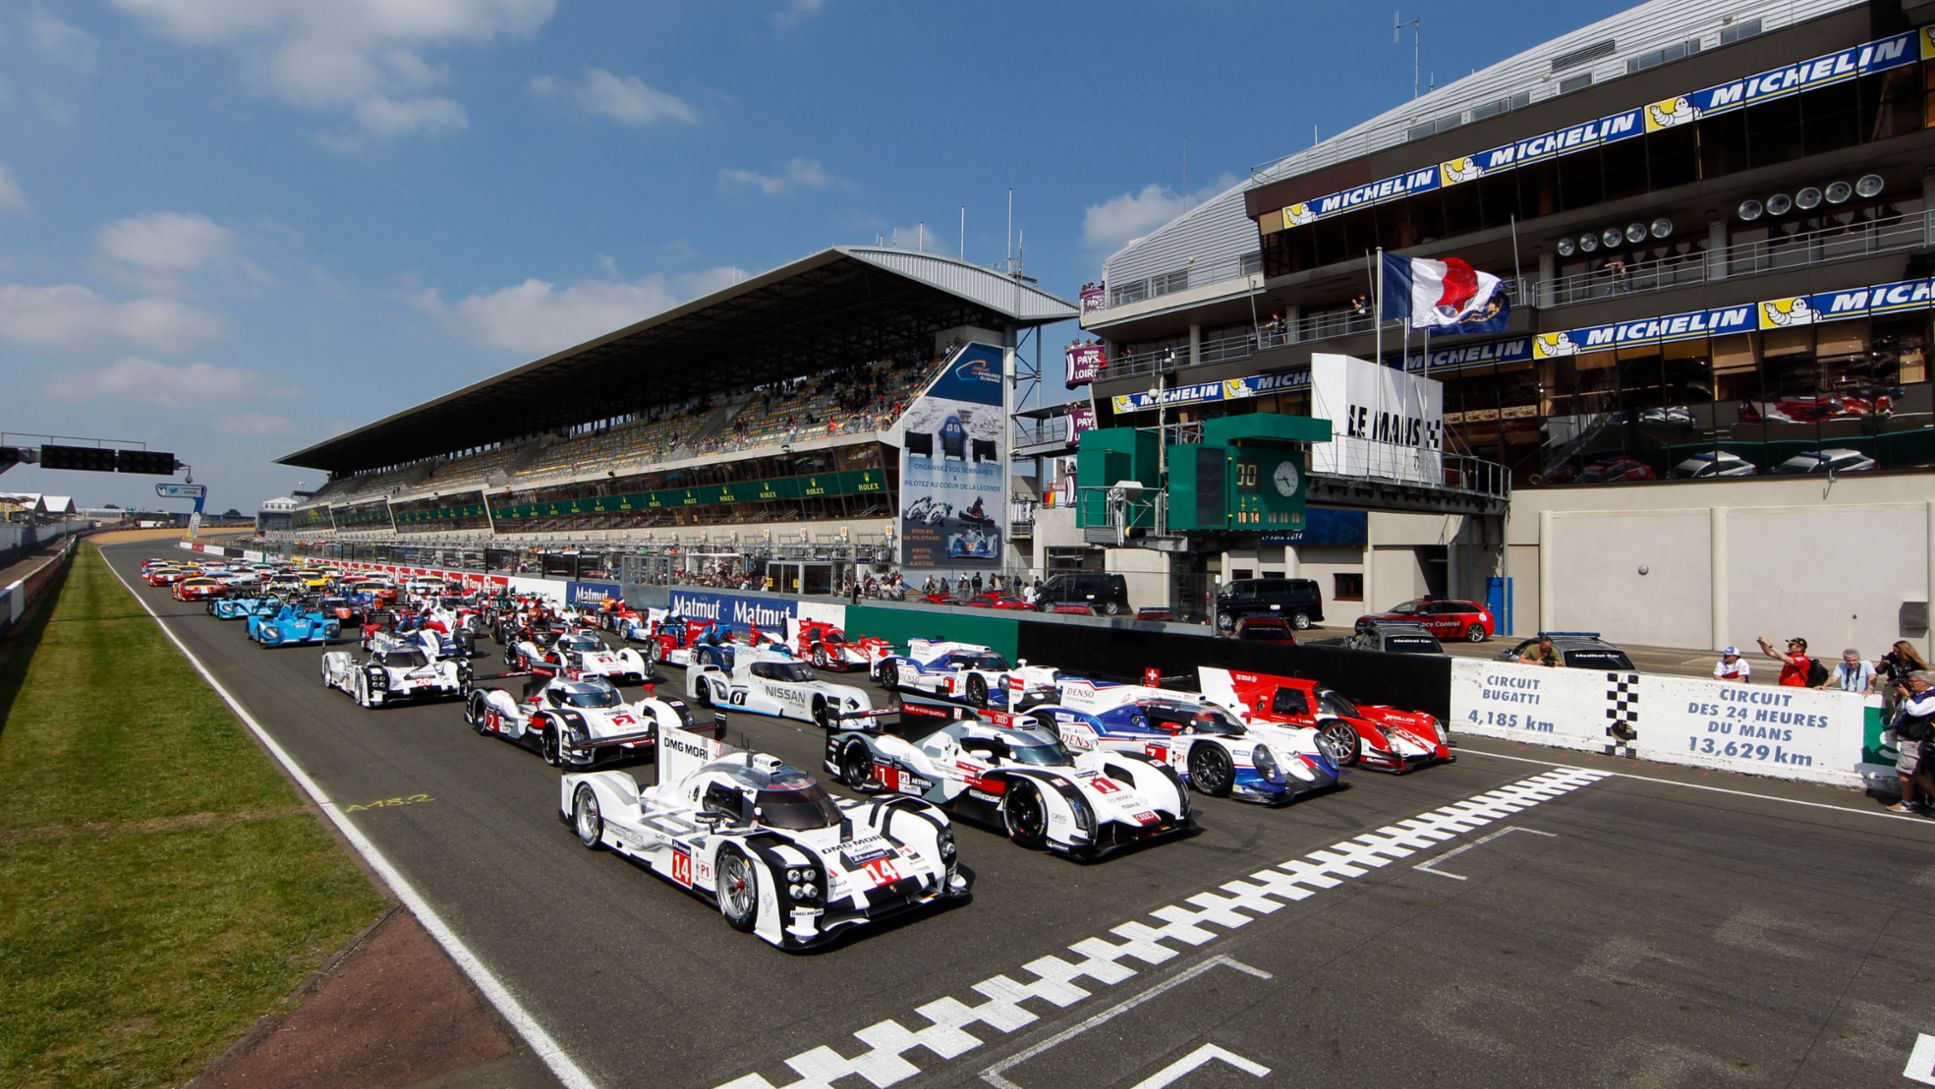 2014 Le Mans cars